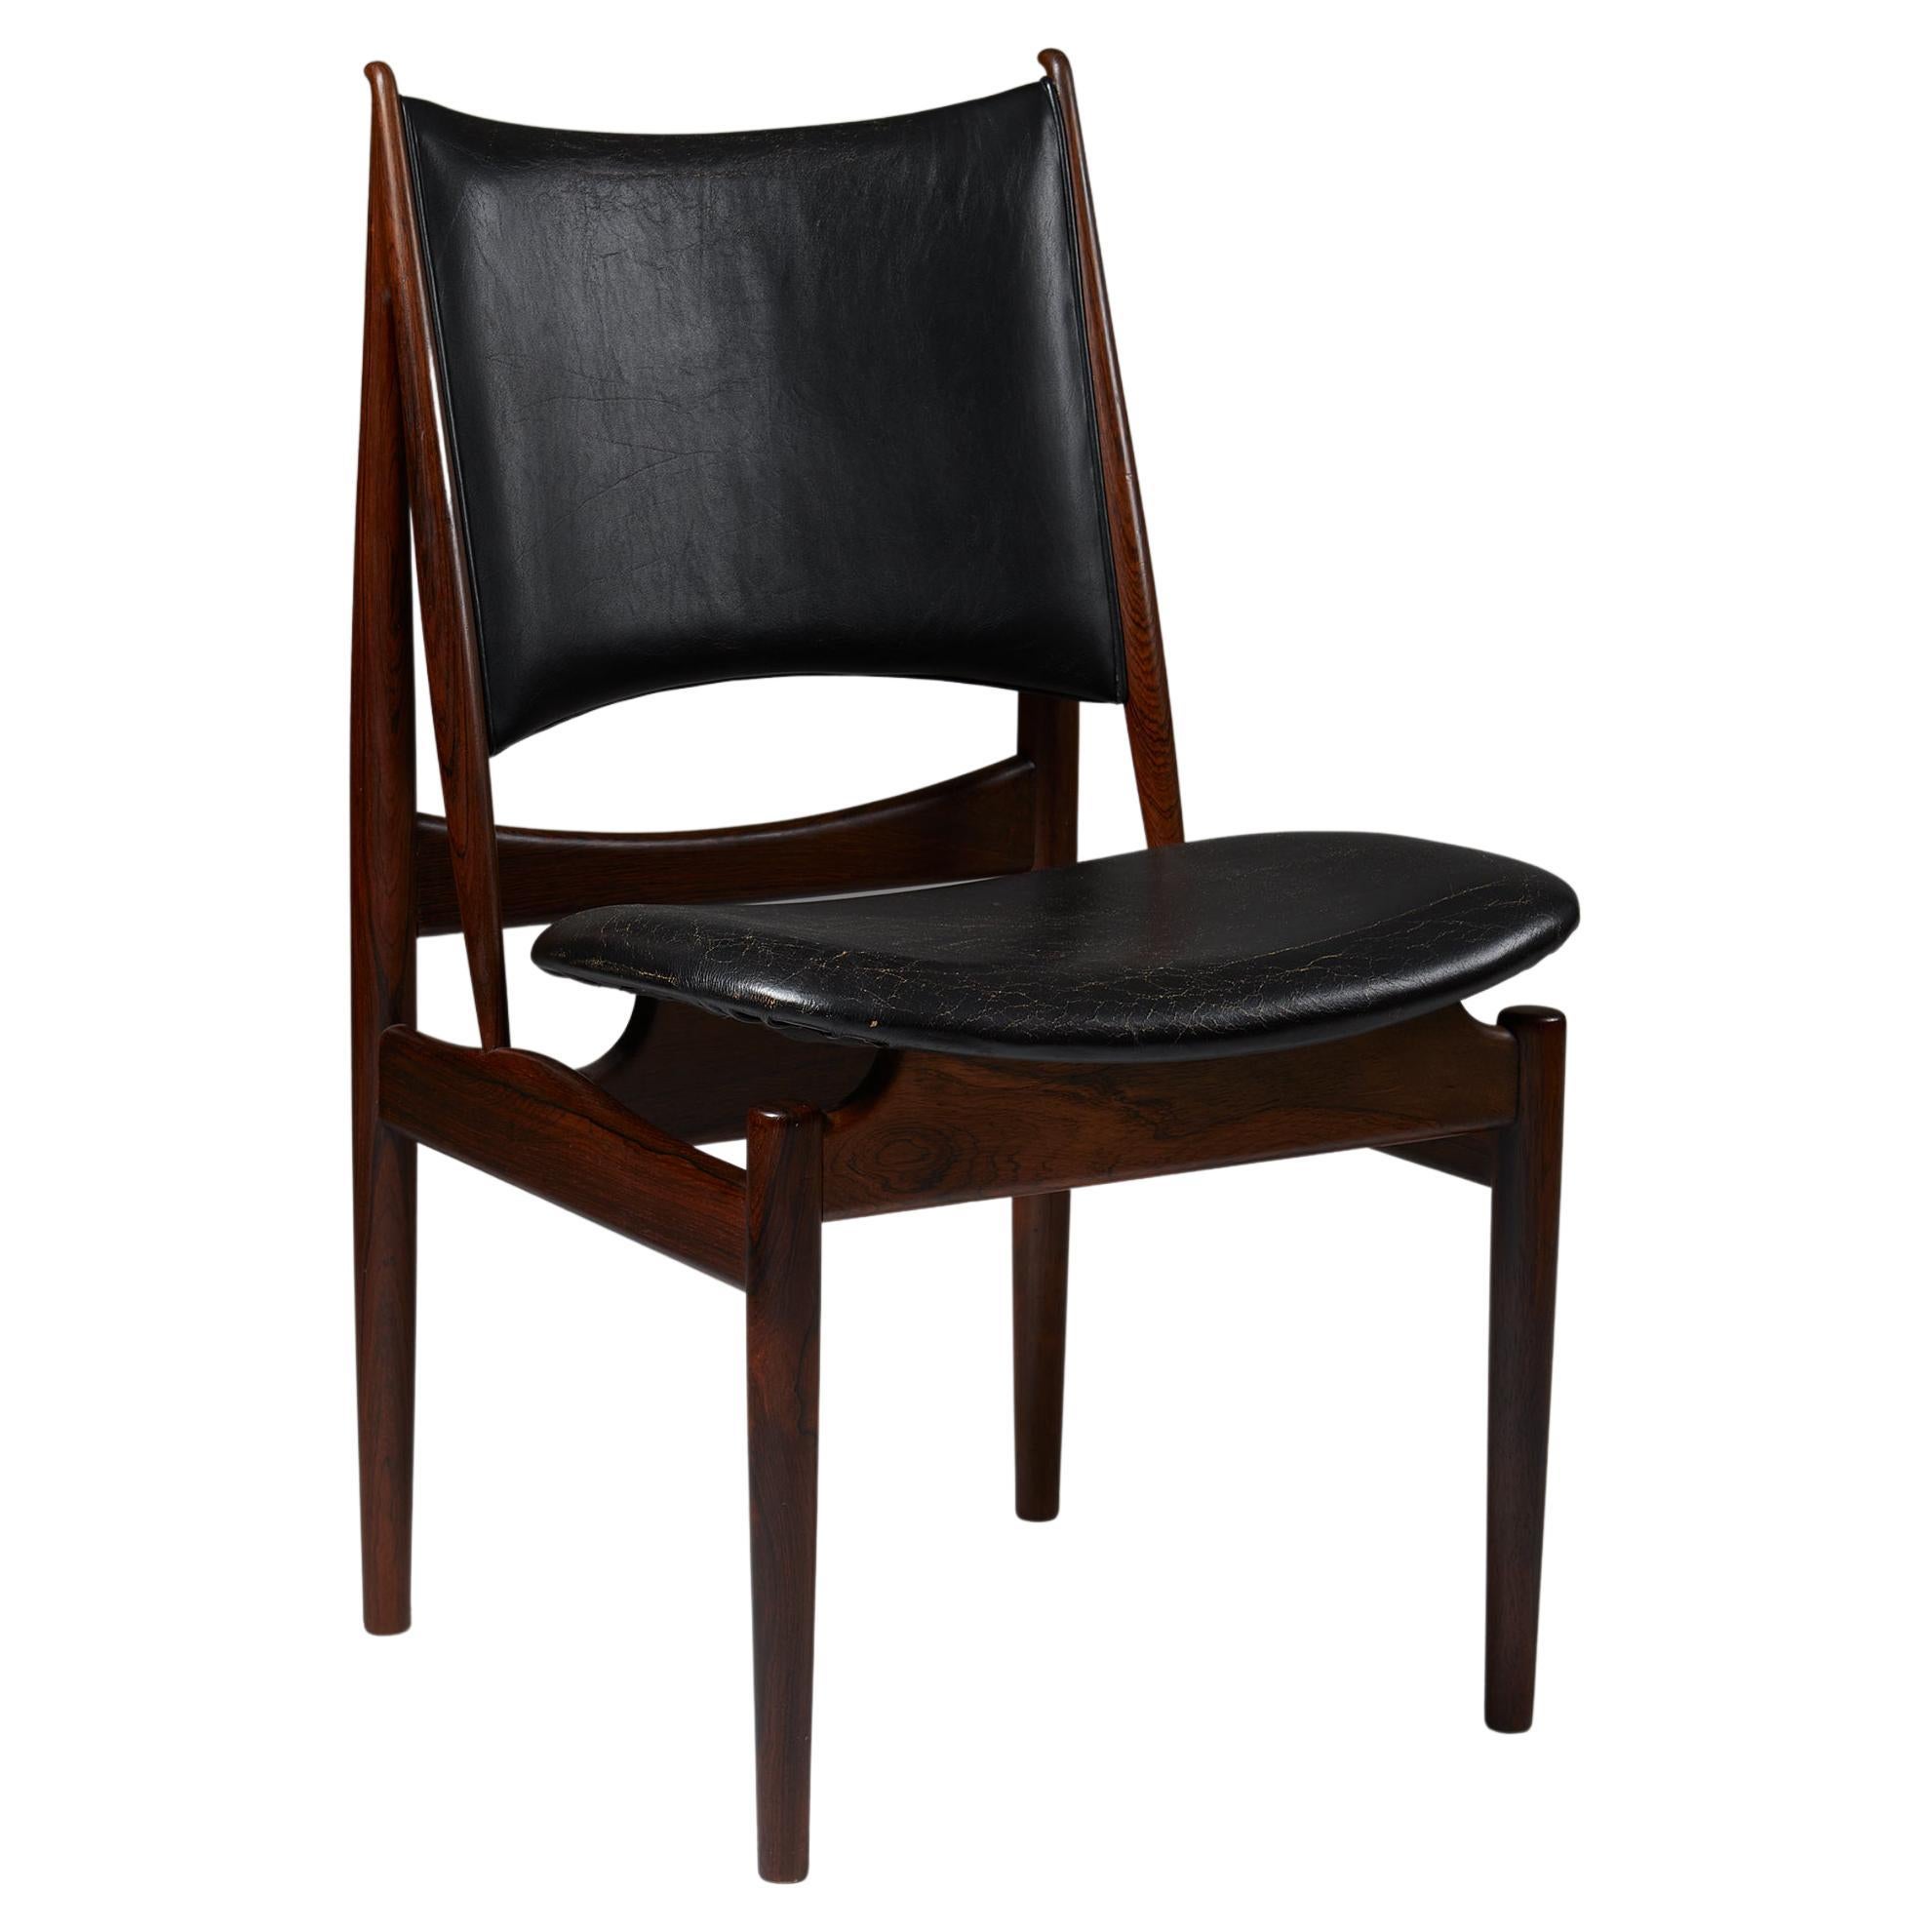 Stuhl „Egyptian“ entworfen von Finn Juhl für Niels Vodder, Dänemark, 1949